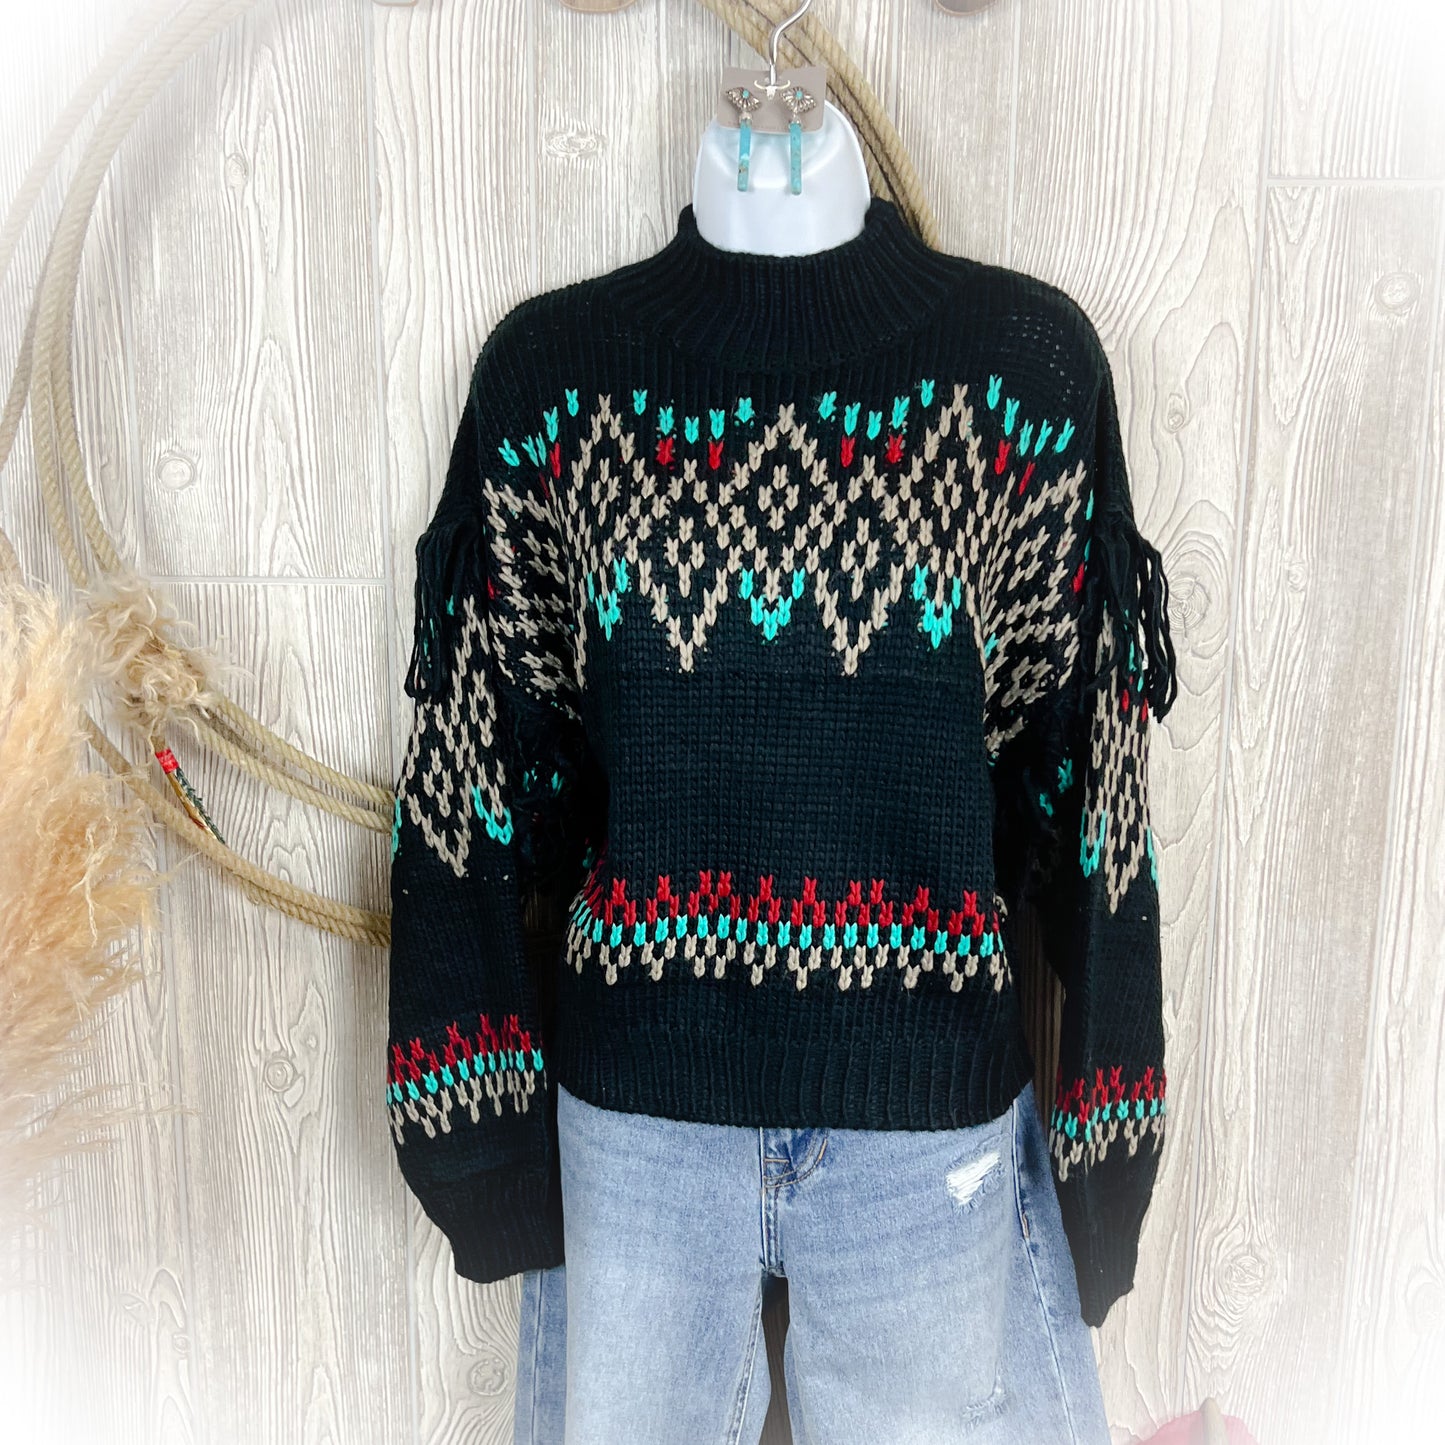 Western Mock Turtleneck Sweater